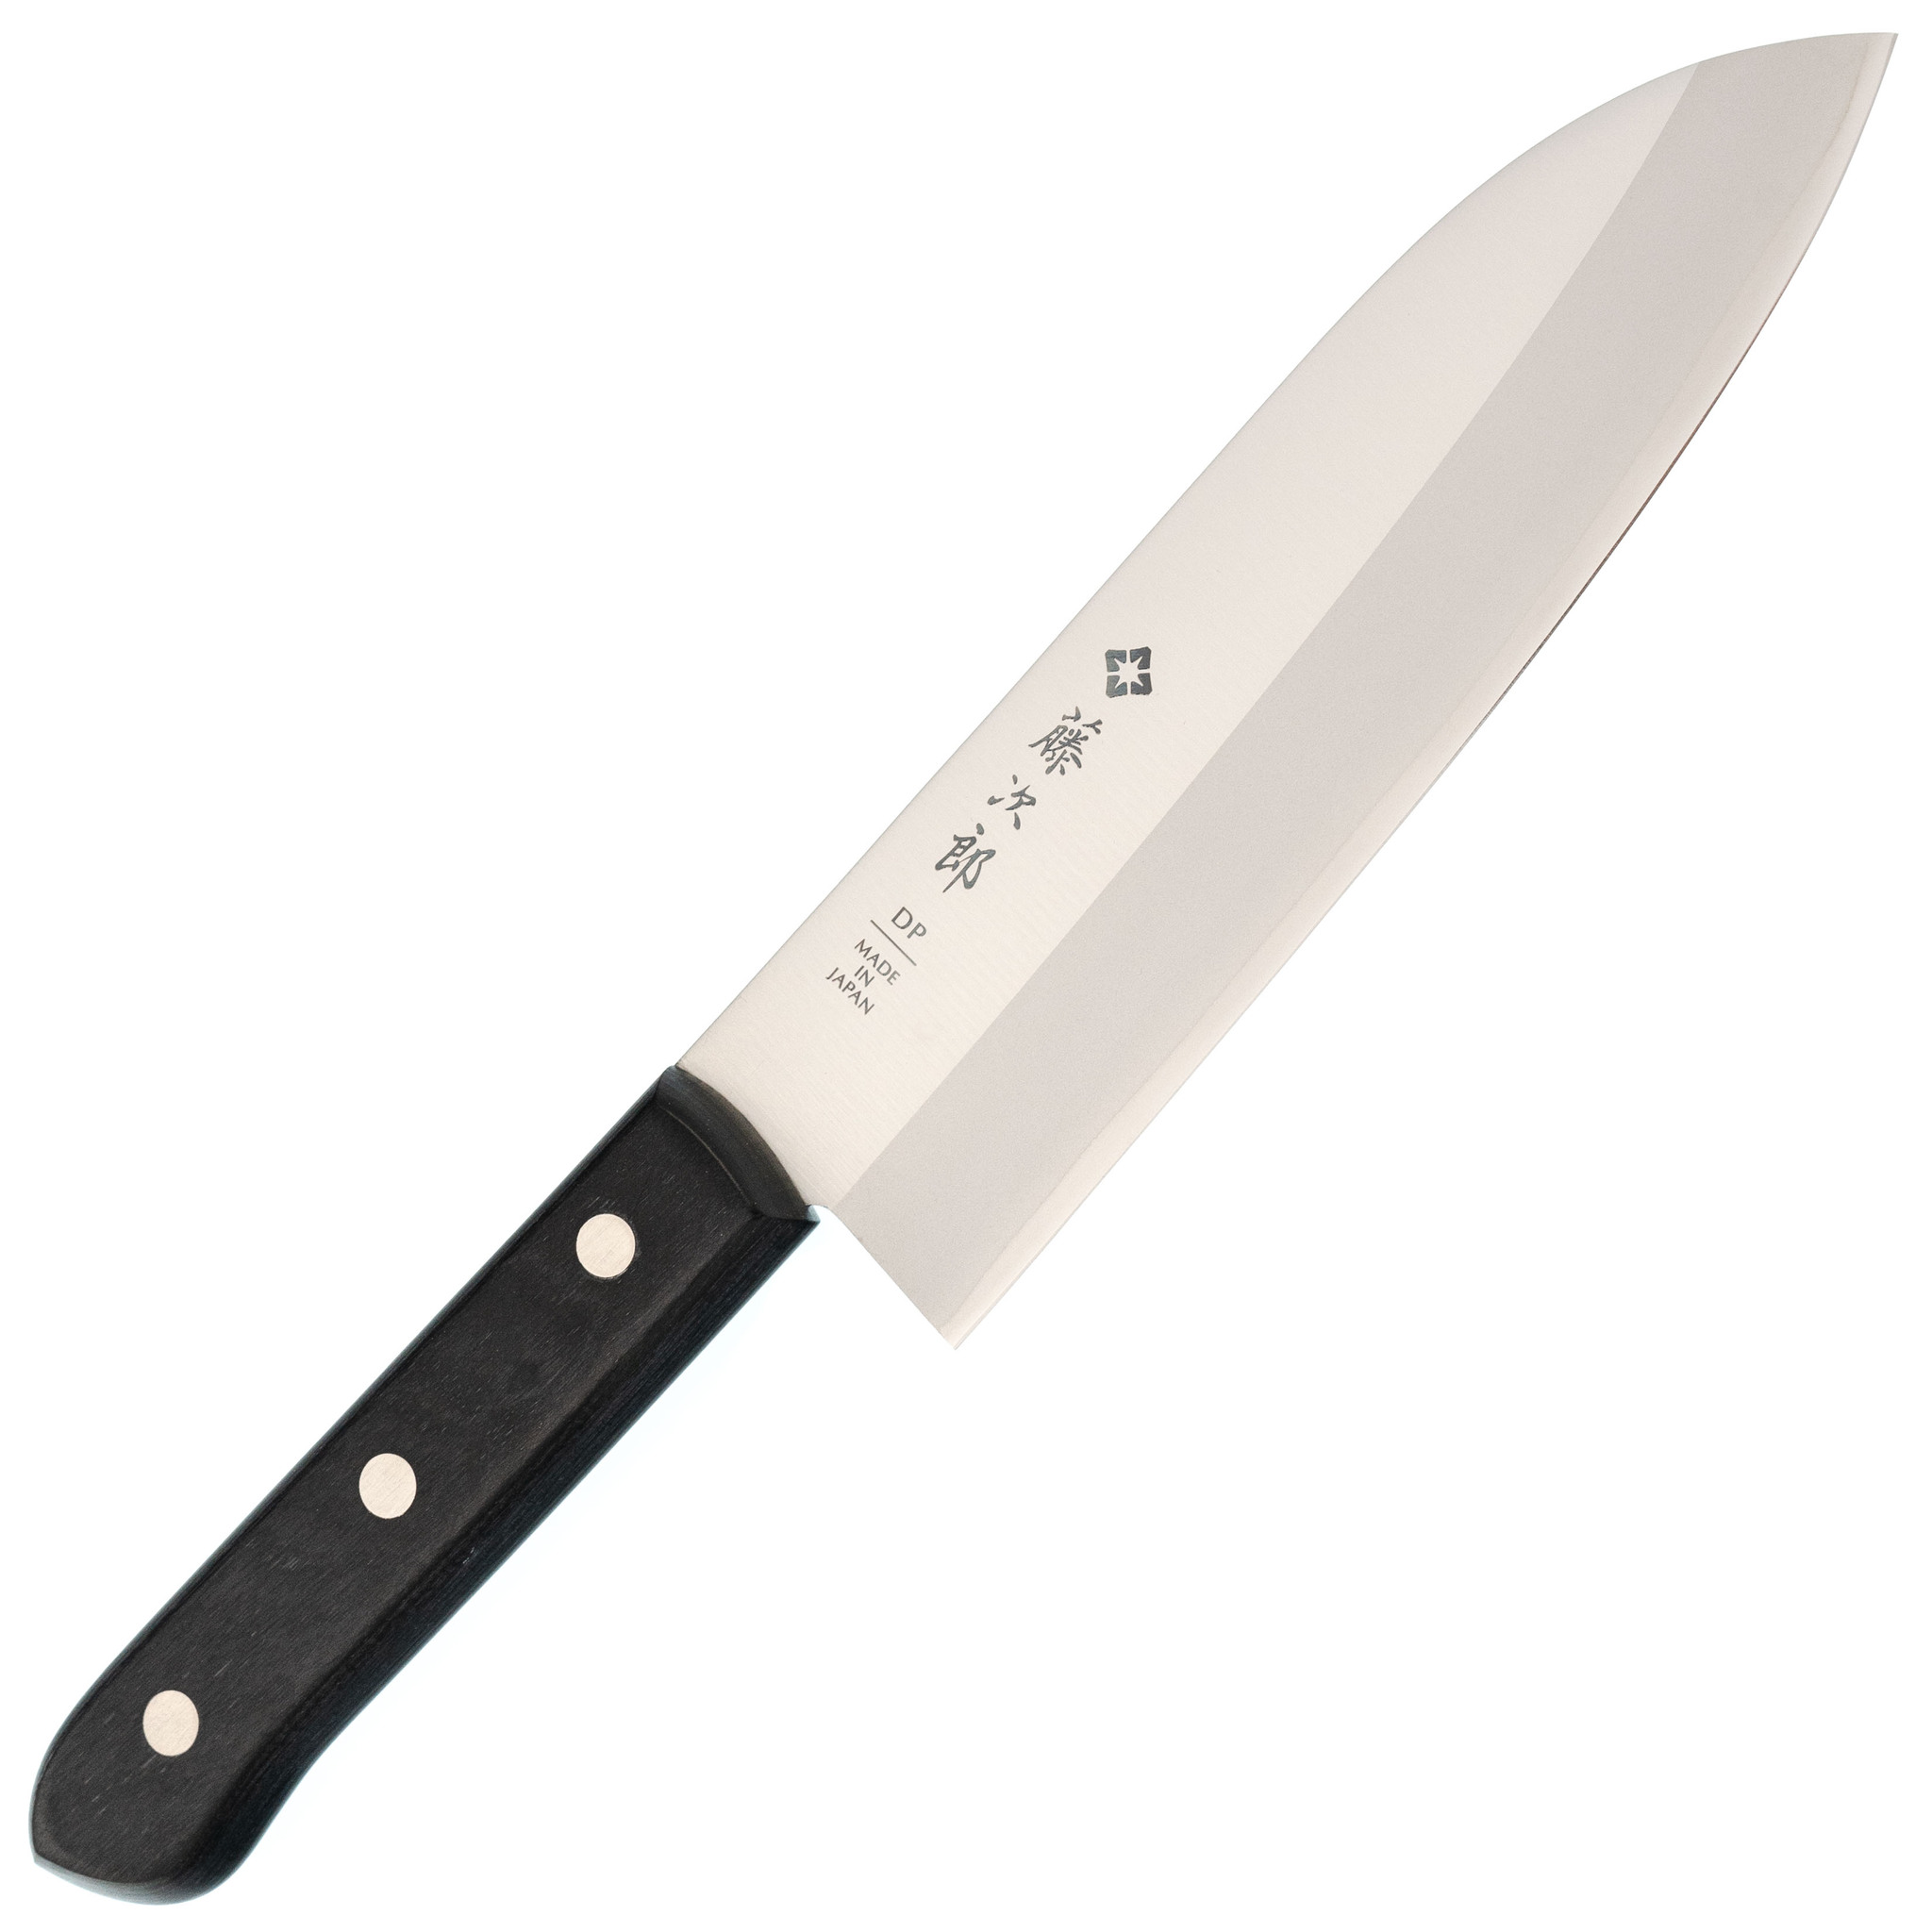 Нож Сантоку Western Knife, Tojiro, F-311, сталь VG-10, чёрный нож складной hogue ex 04 upswept сталь 154cm рукоять стеклотекстолит g mascus® чёрный